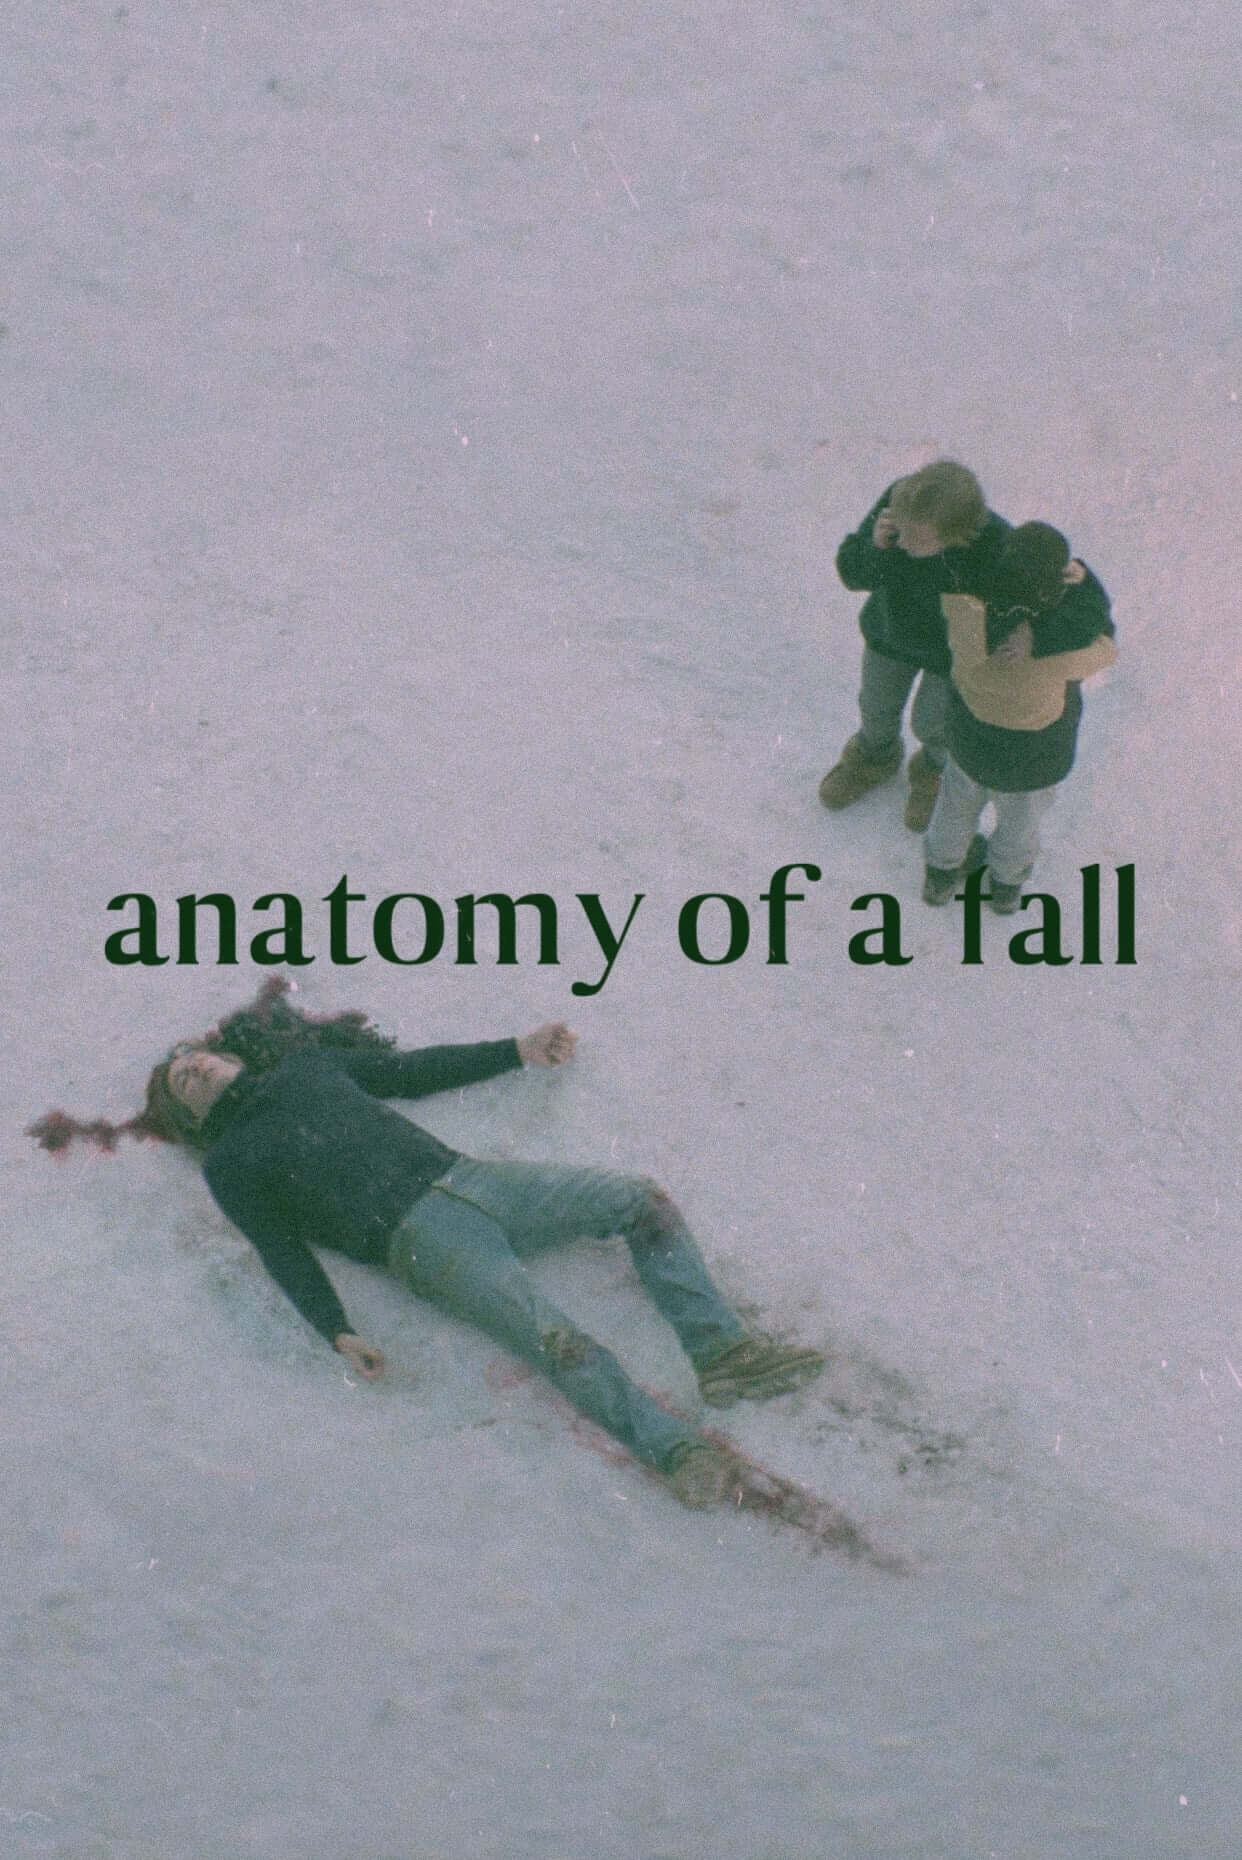 آناتومی یک سقوط (Anatomy of a Fall)